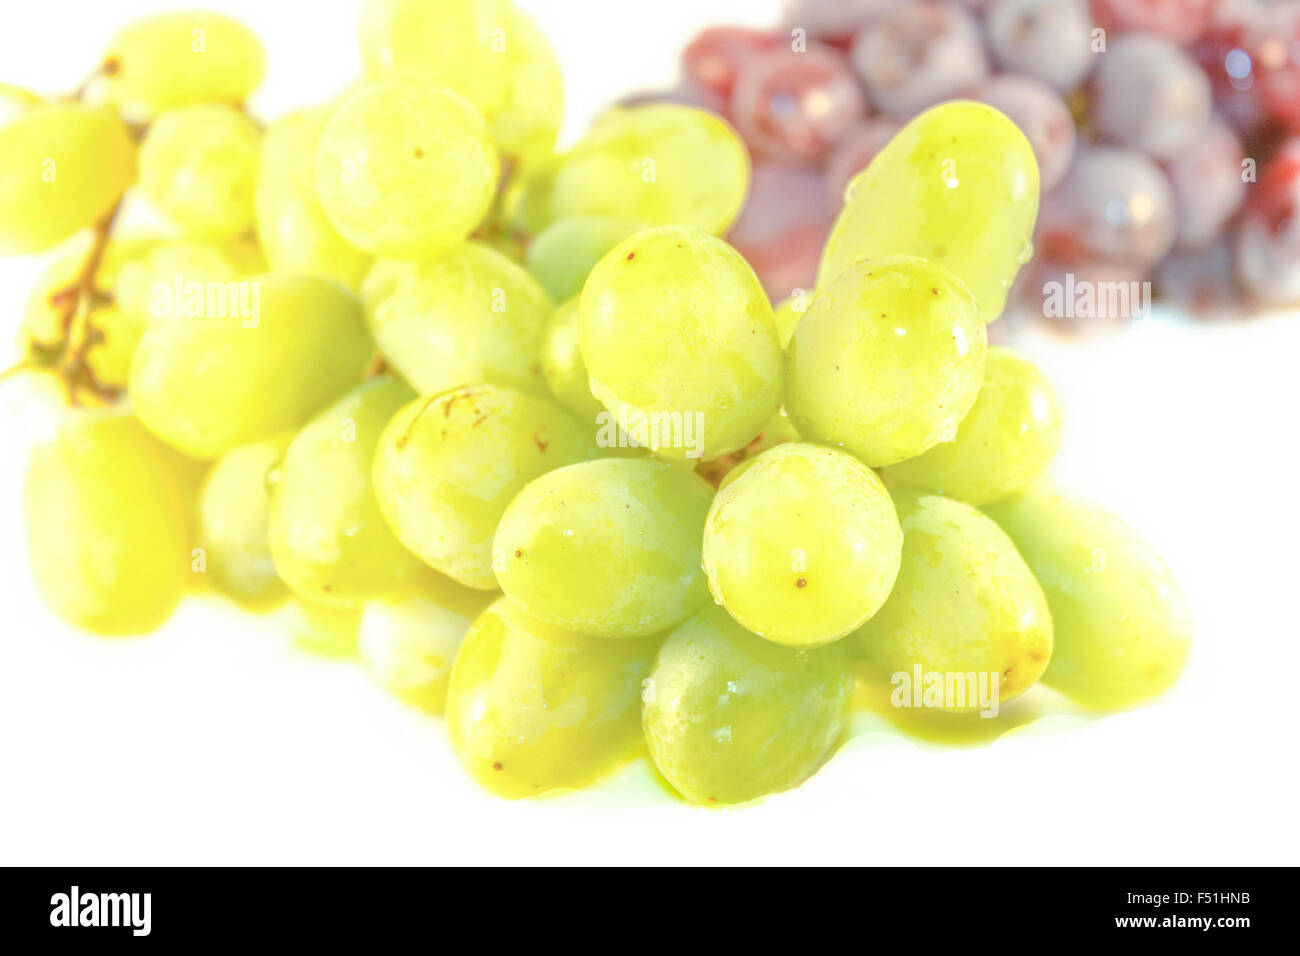 Ein Haufen grüne Trauben vor lila Trauben Stockfoto